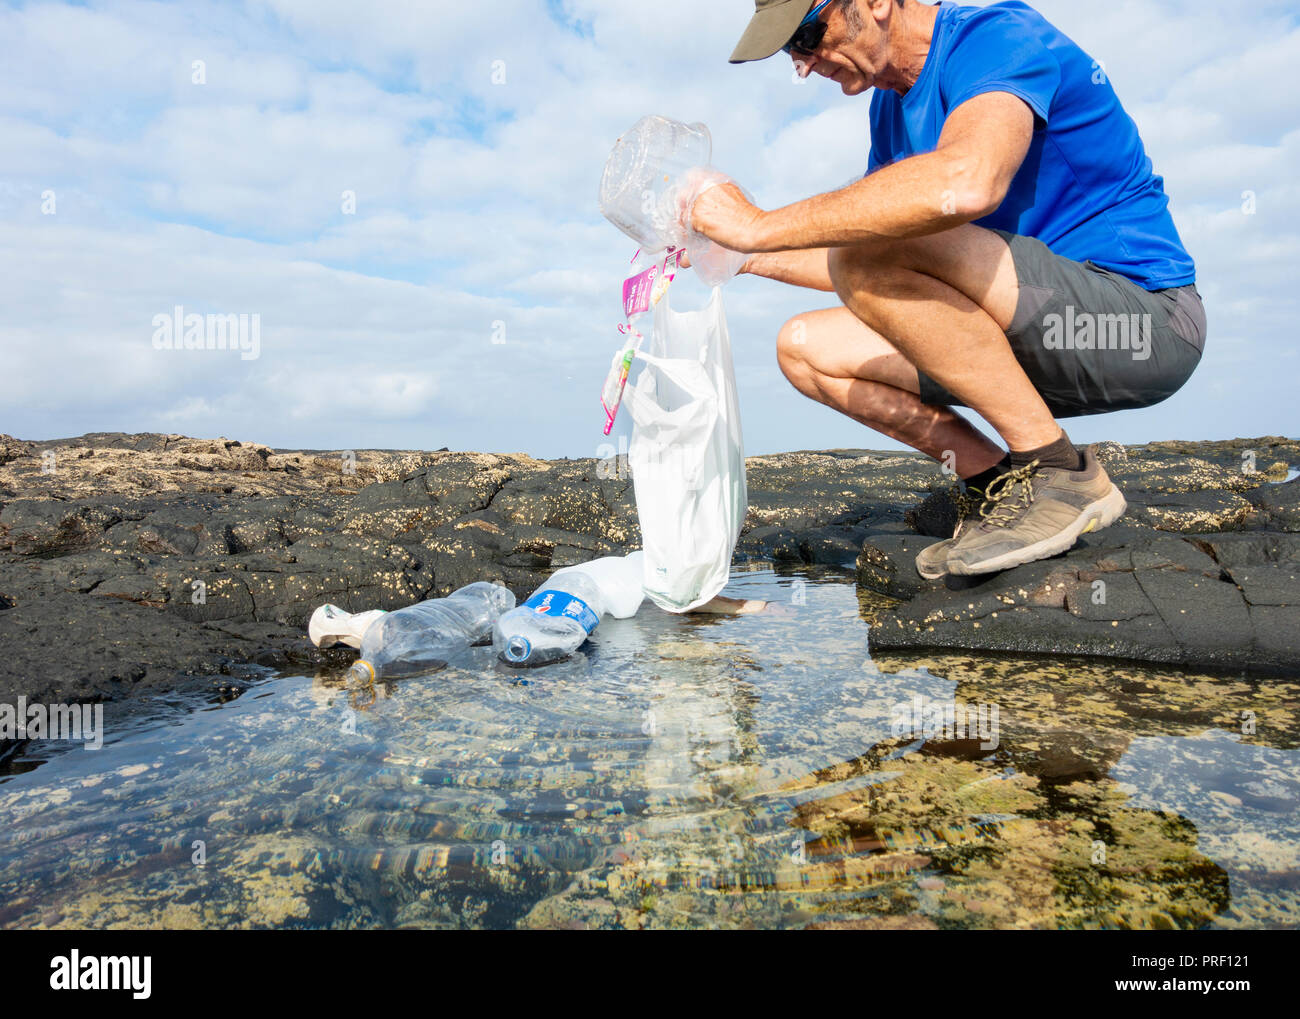 Un Plogger/jogger recueille des ordures en plastique de la plage rockpool durant son jogging Banque D'Images